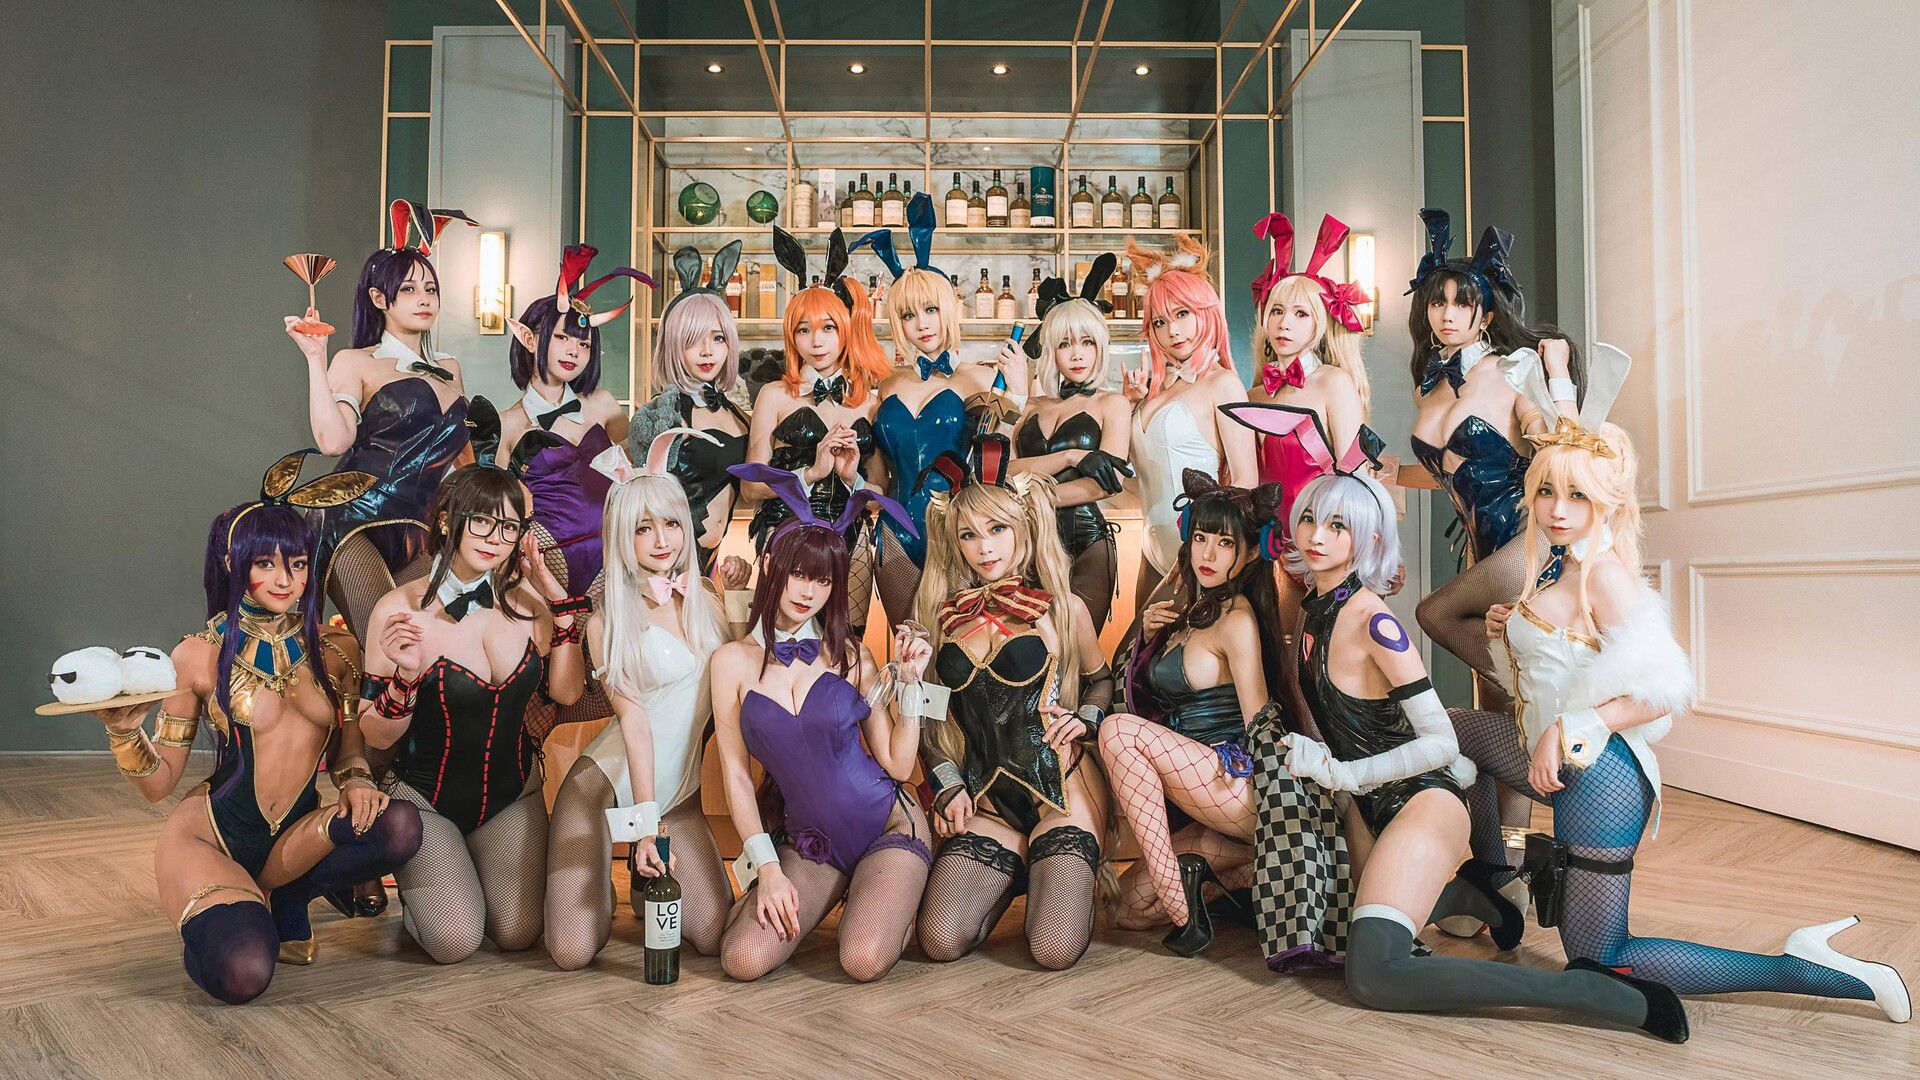 【Sad news】Female cosplayer, i'll take a group photo too echi ...w 1